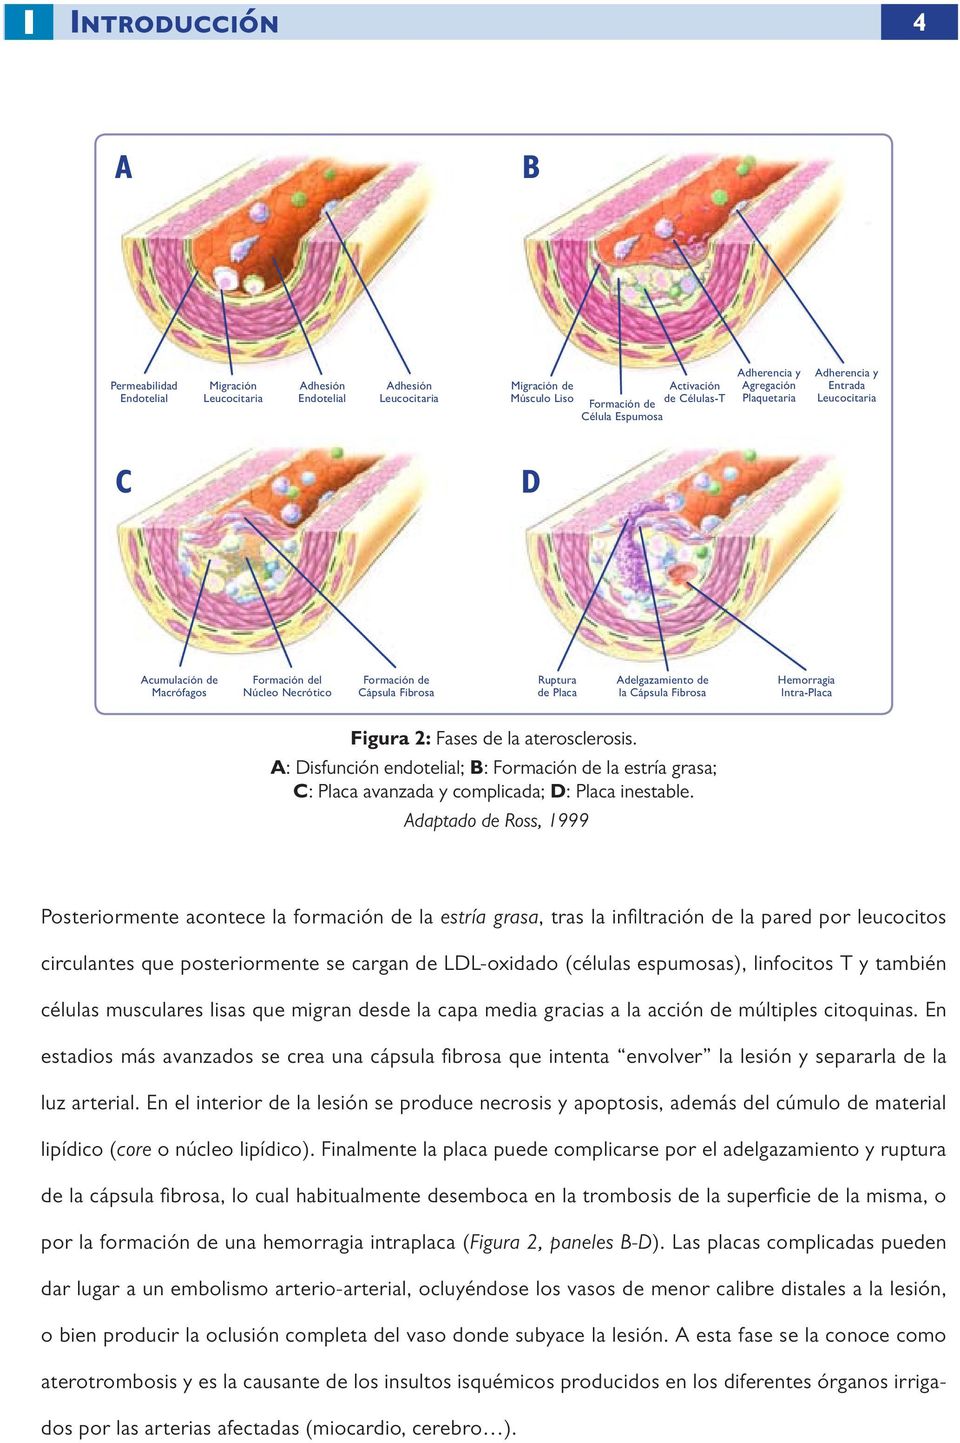 Cápsula Fibrosa Hemorragia Intra-Placa Figura 2: Fases de la aterosclerosis. A: Disfunción endotelial; B: Formación de la estría grasa; C: Placa avanzada y complicada; D: Placa inestable.